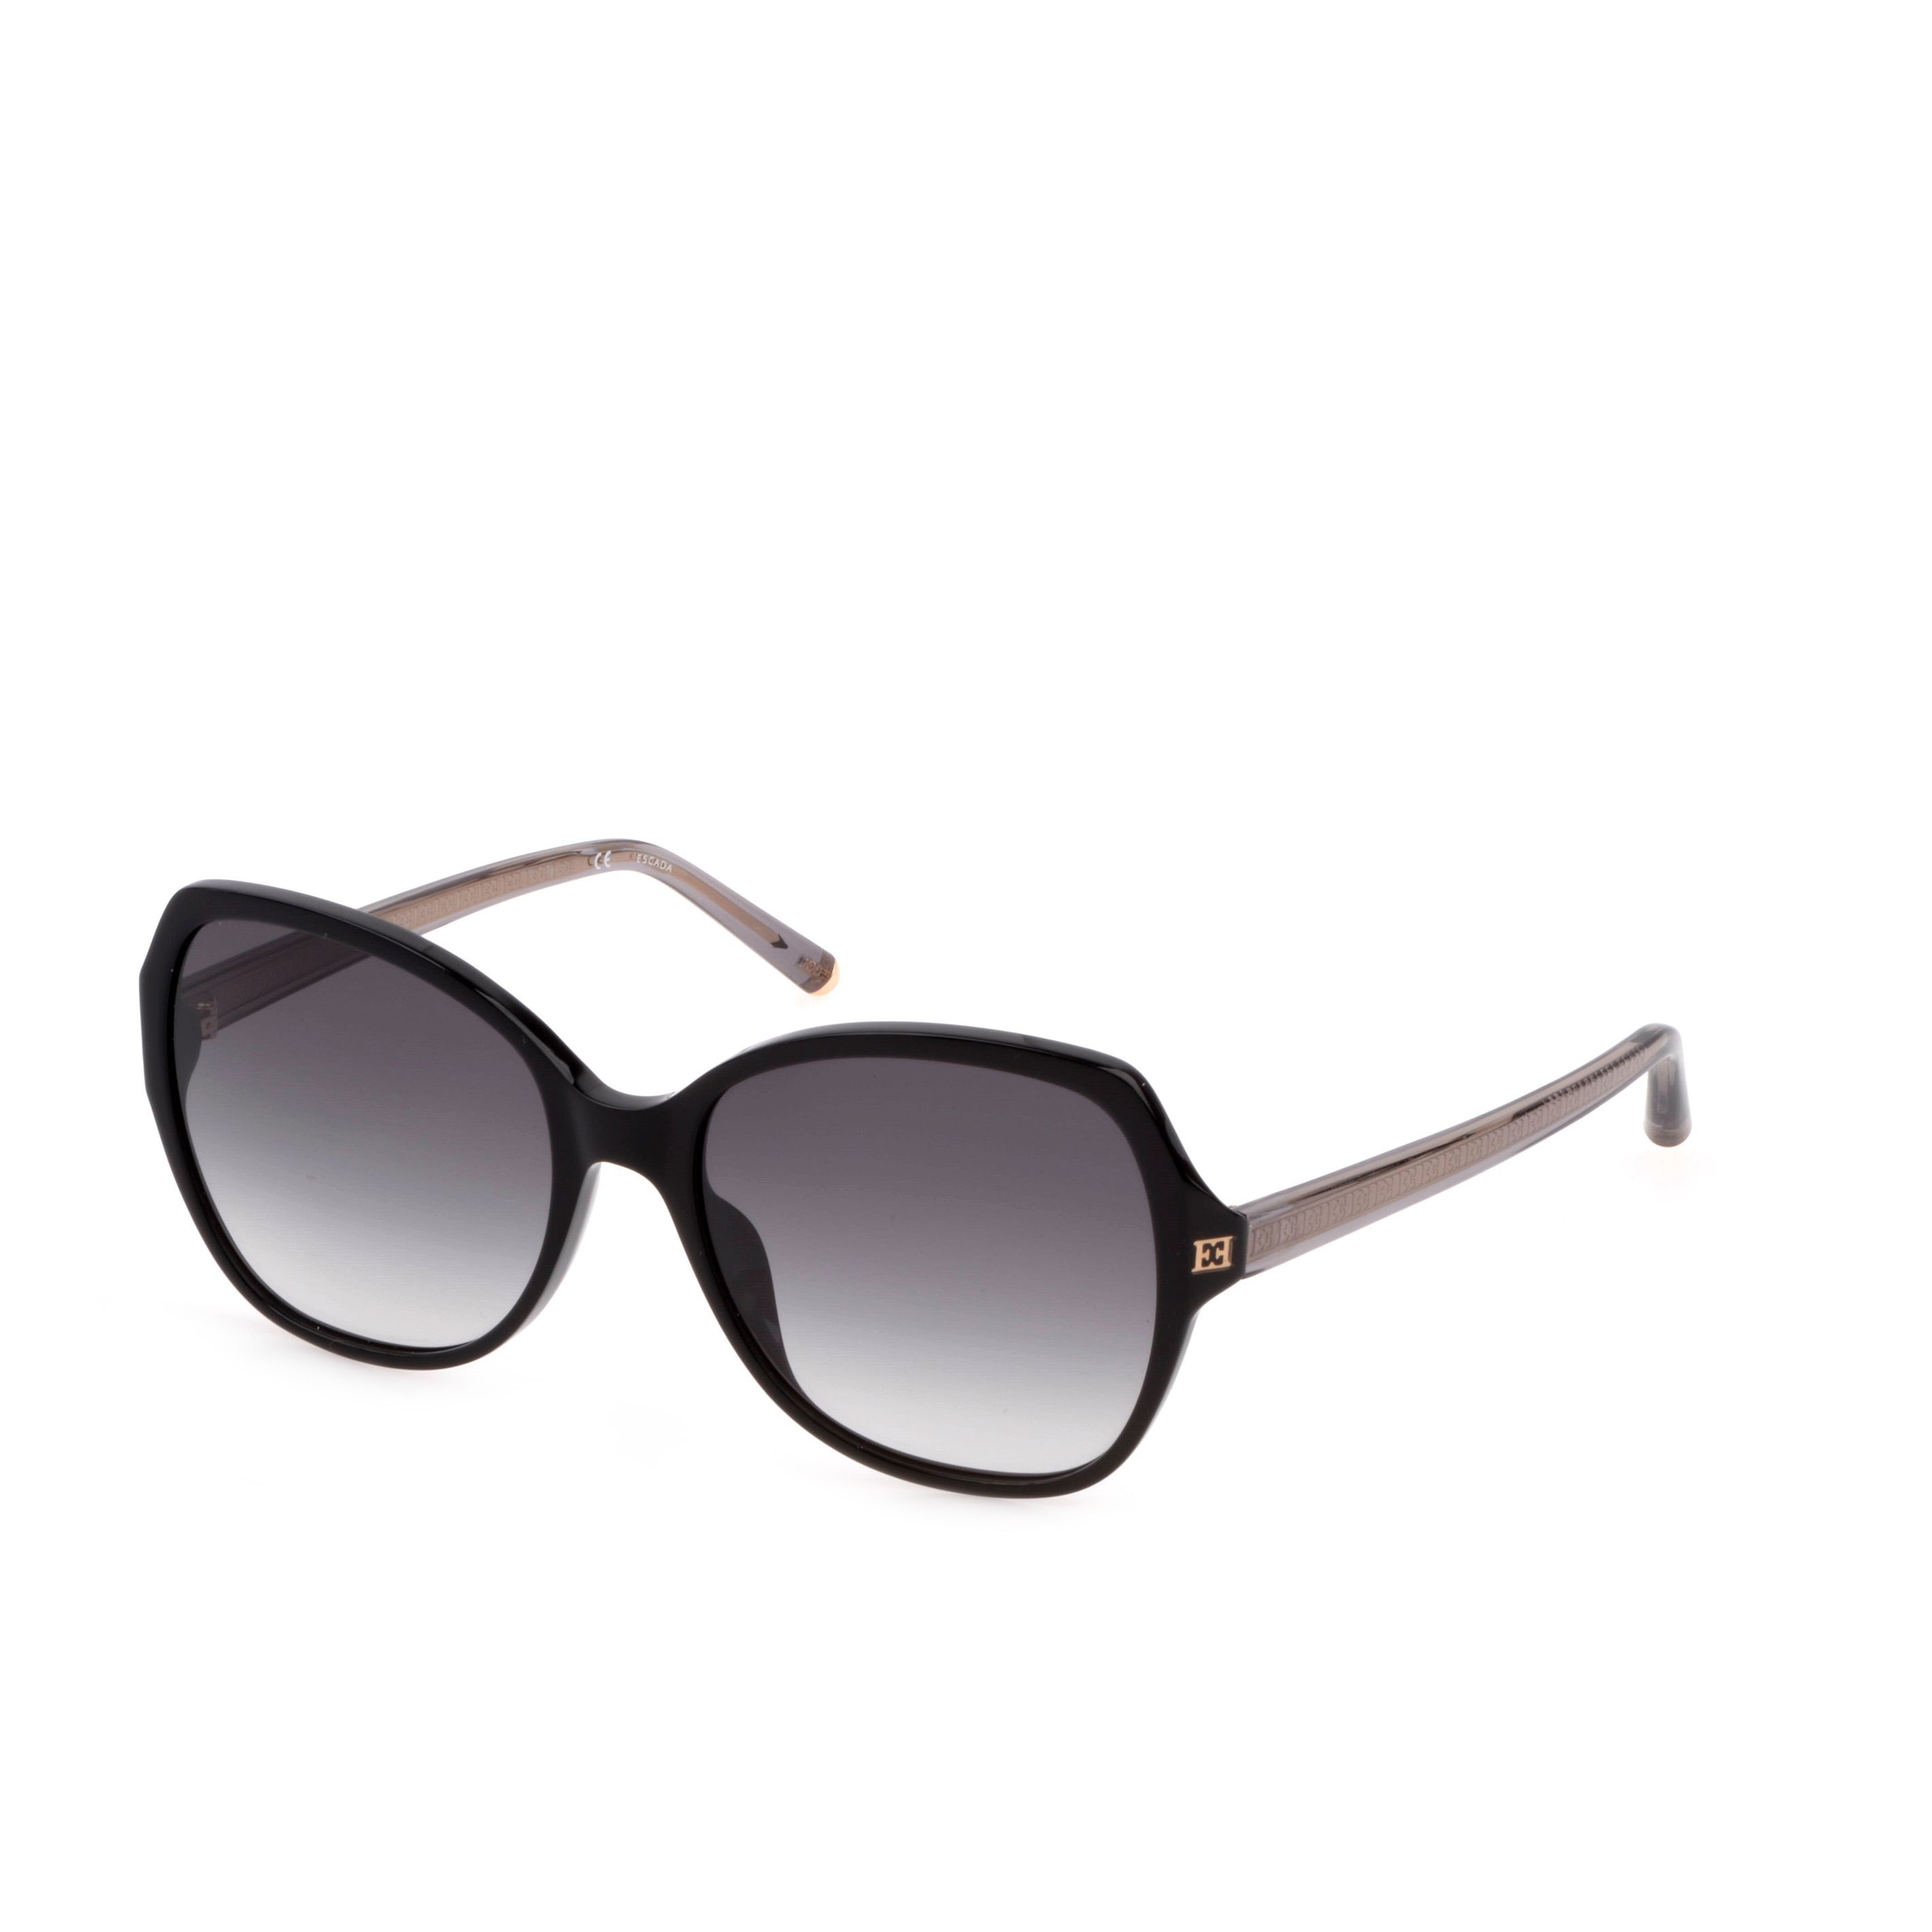 SESC78 Square Sunglasses 700 - size 57